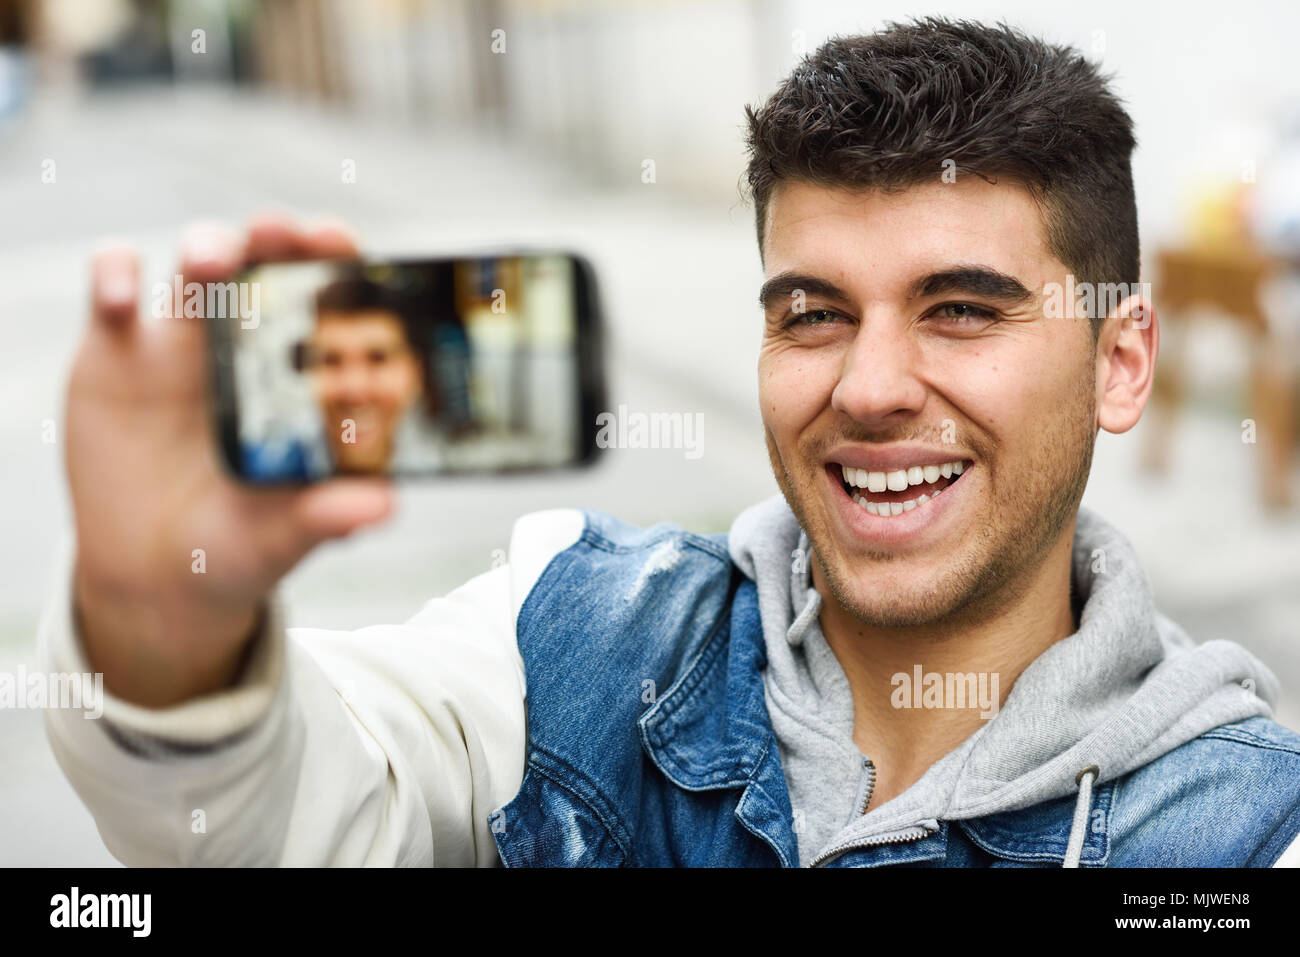 Hübscher mann selfie